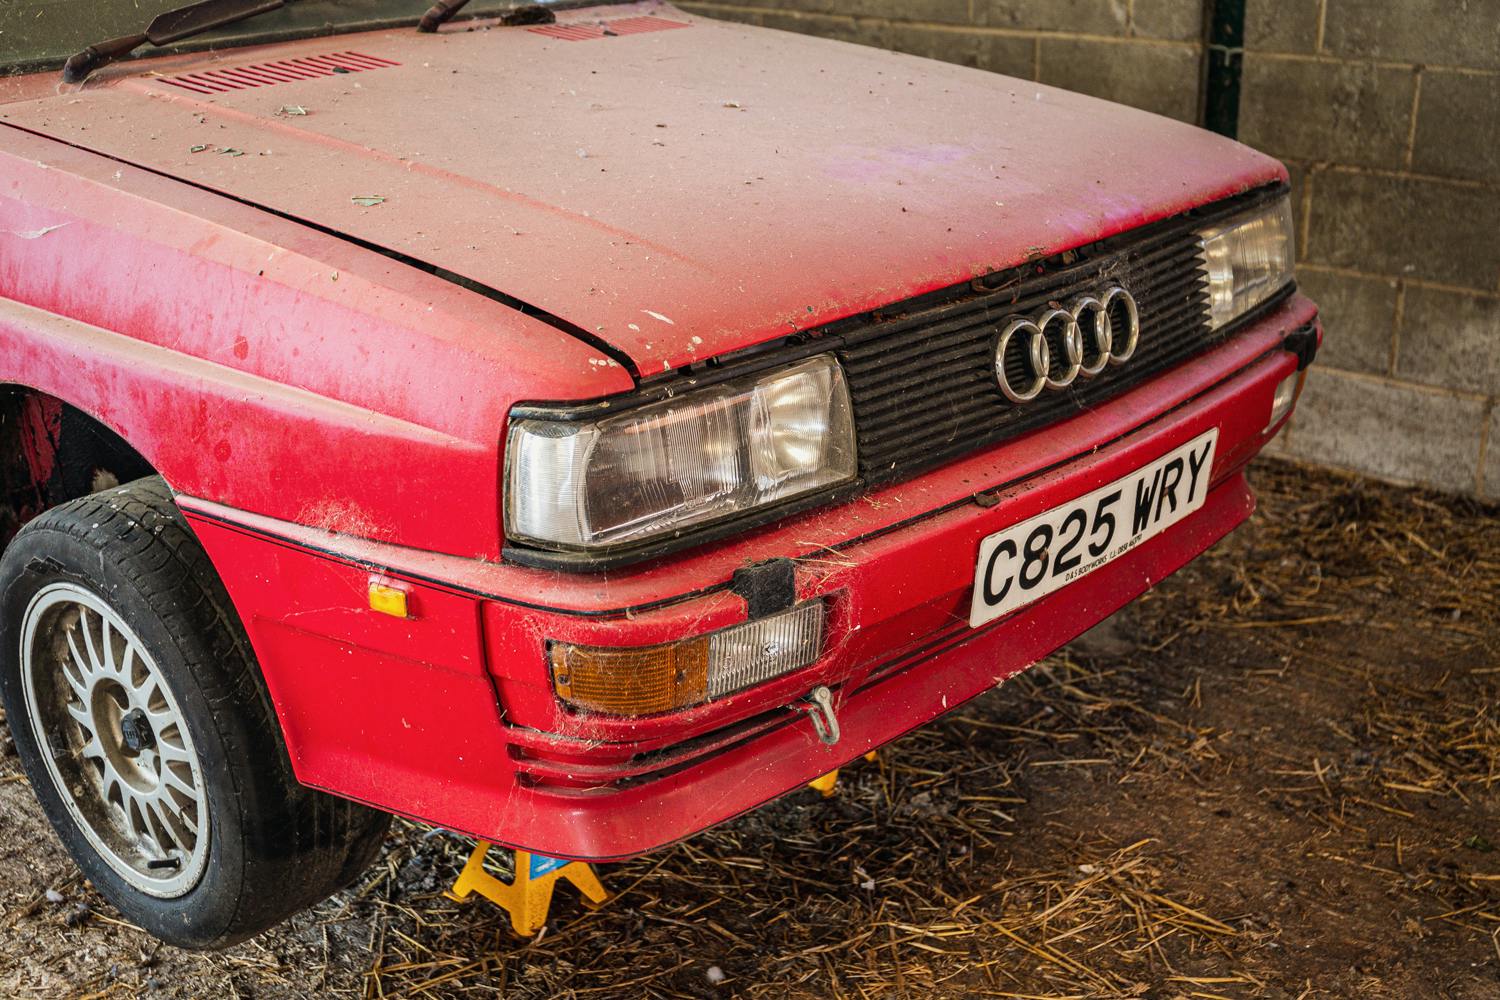 Audi Quattro barn find front fascia